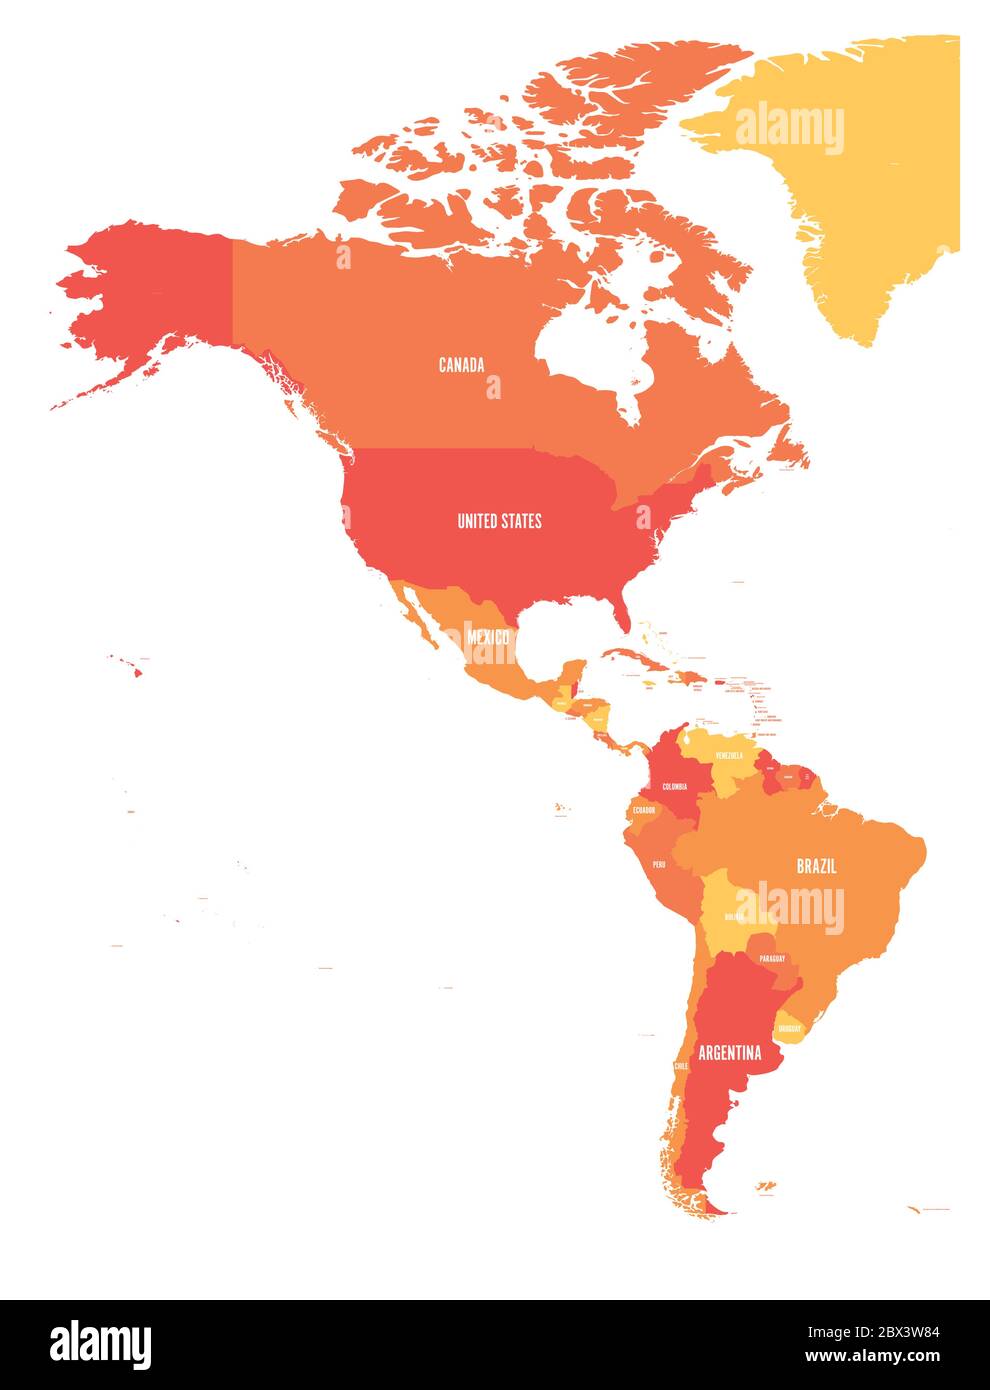 Politische Karte von Amerika in vier Schattierungen von Orange. Nord- und Südamerika mit Länderkennzeichnungen. Einfache flache Vektorgrafik. Stock Vektor